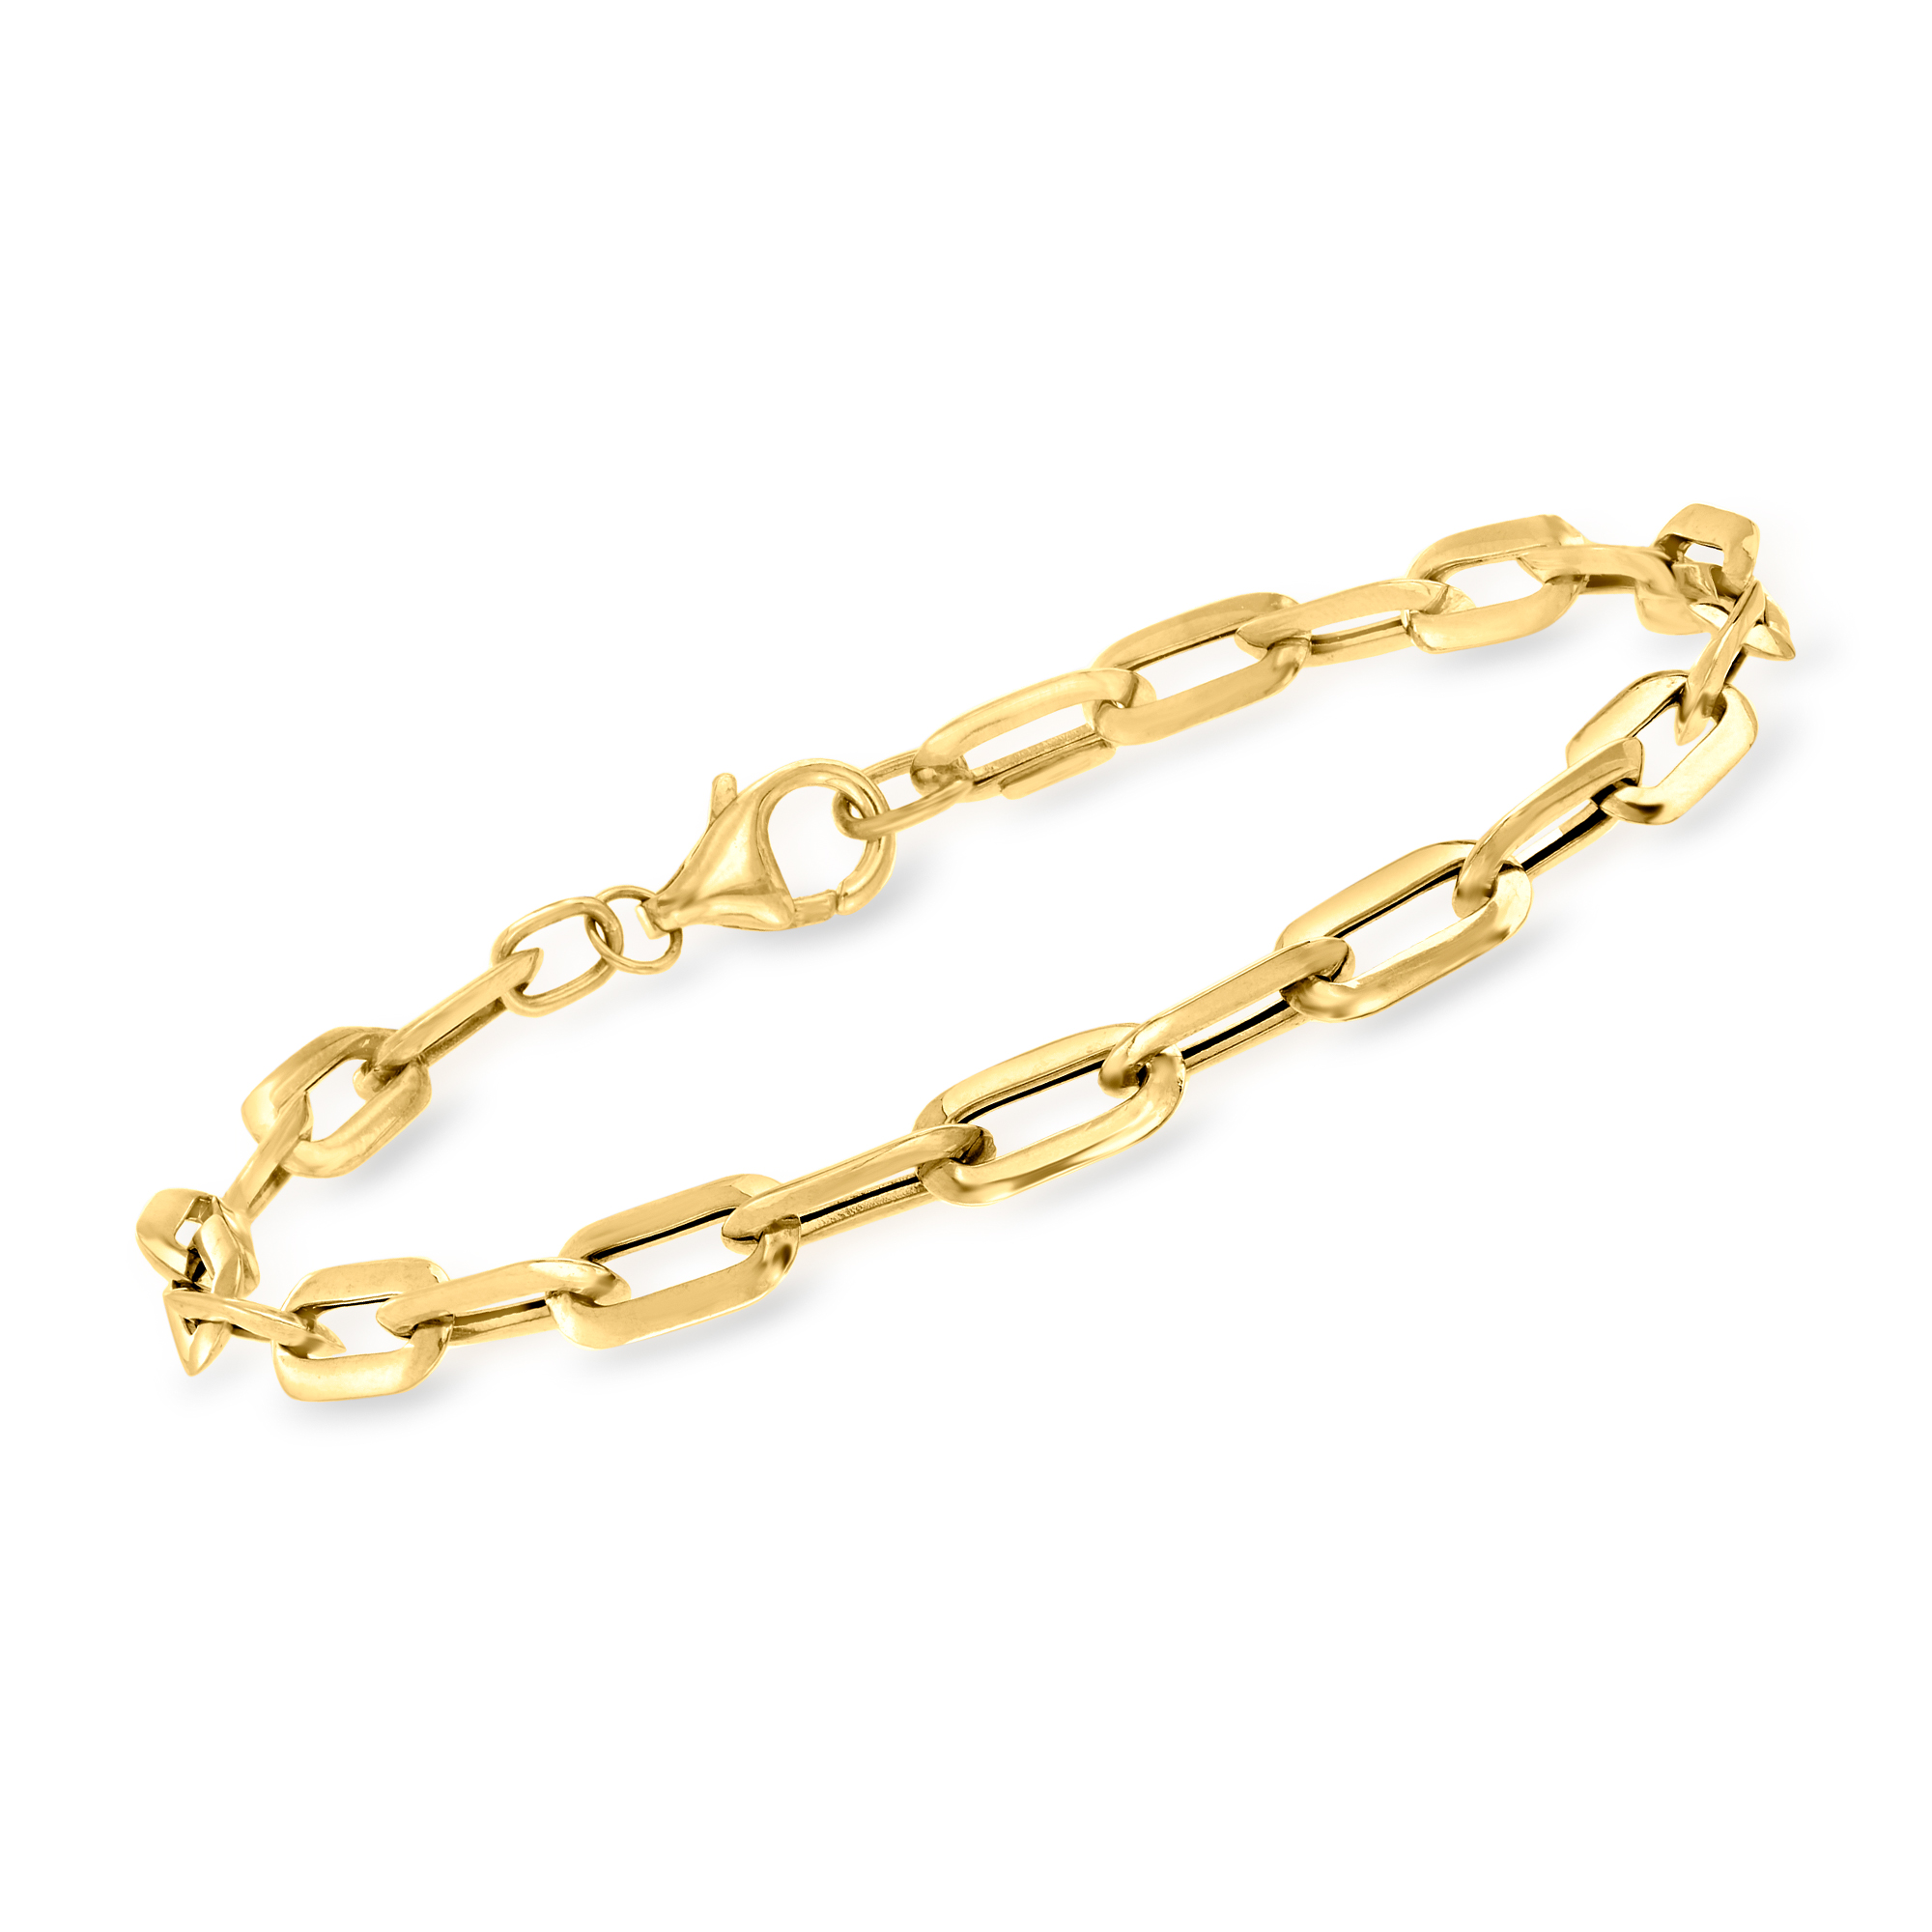 Ross-Simons - Italian 14kt Yellow Gold Paper Clip Link Bracelet. 7